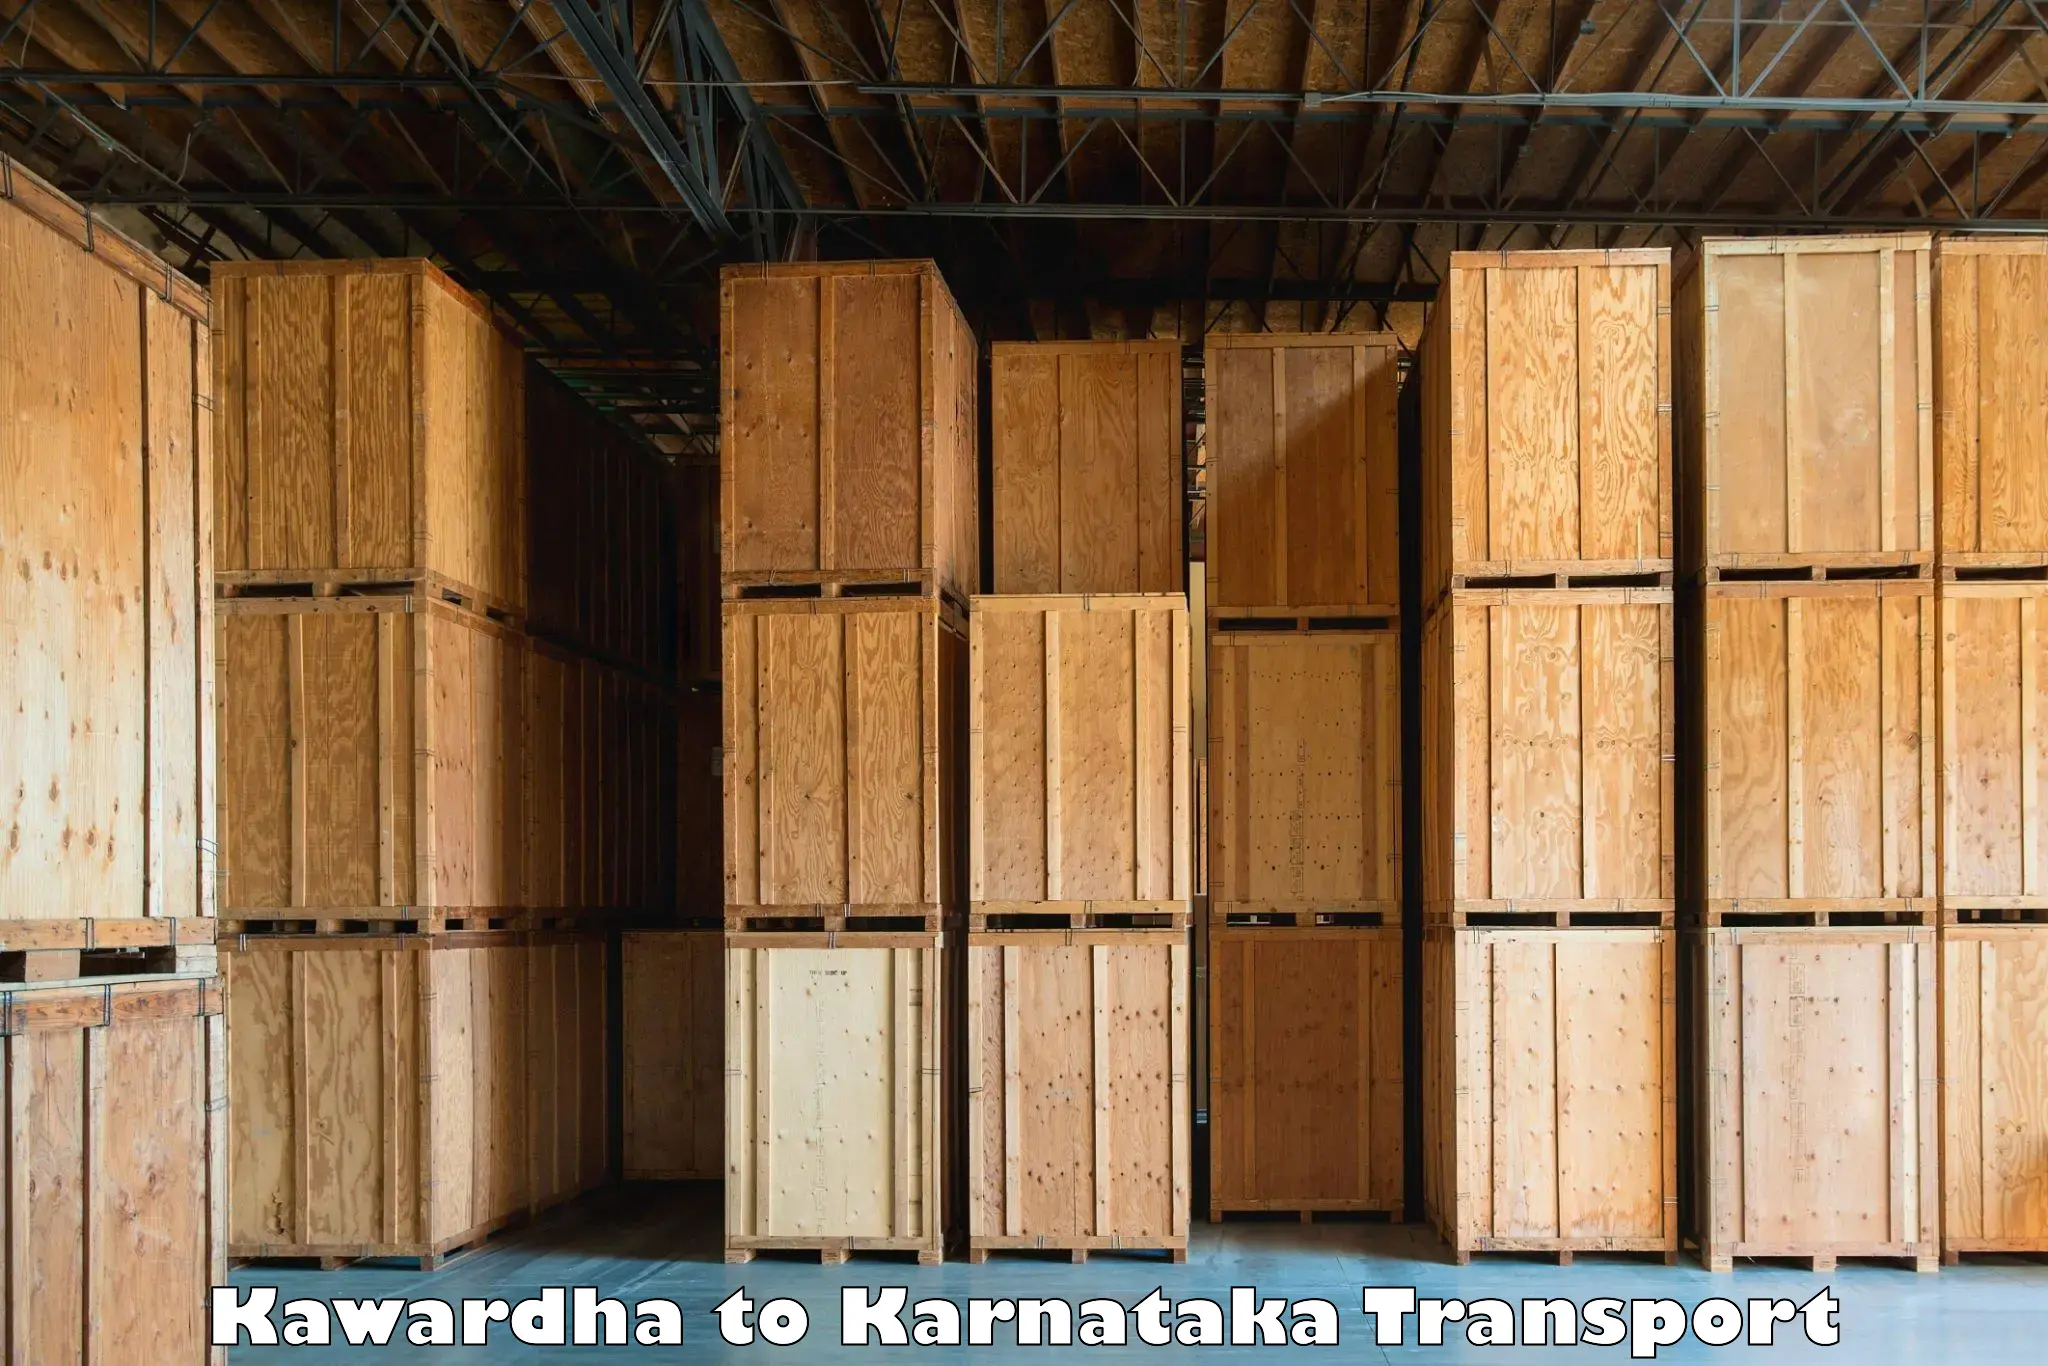 Transport in sharing Kawardha to Huliyar